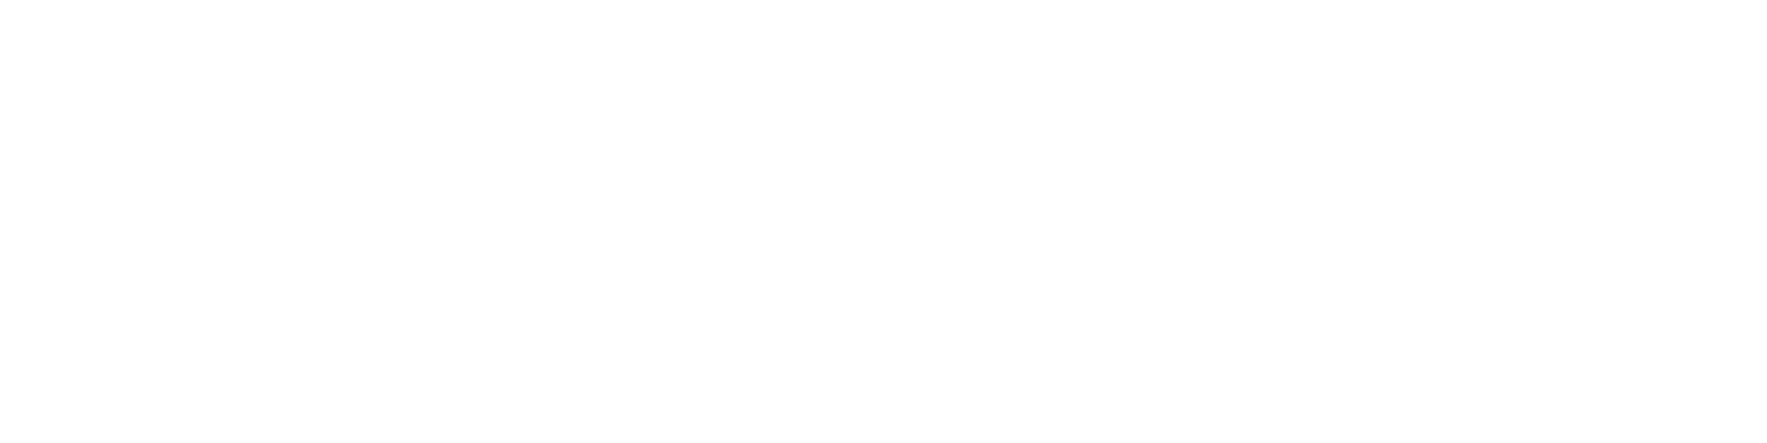 blueroceanproject-logo-reefscapers